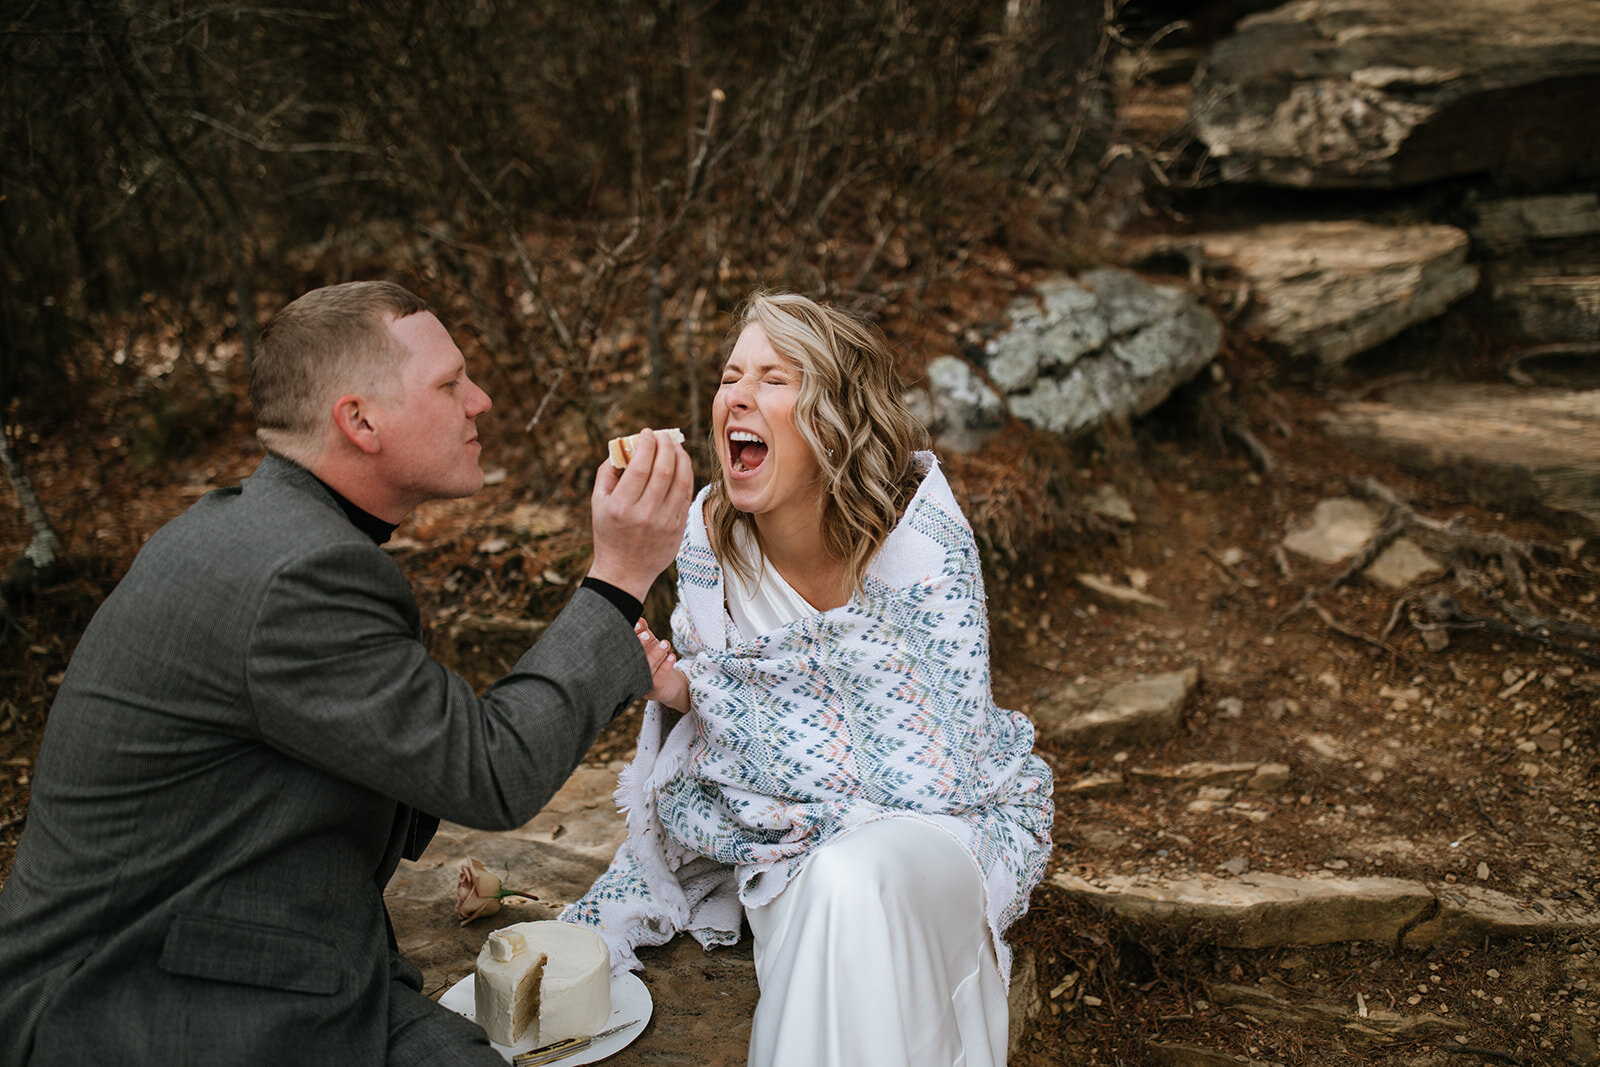 snoopers-rock-adventure-elopement-chattanooga-wedding-photographerfoster-falls-elopement-chattanooga-wedding-photographer-443_websize.jpg